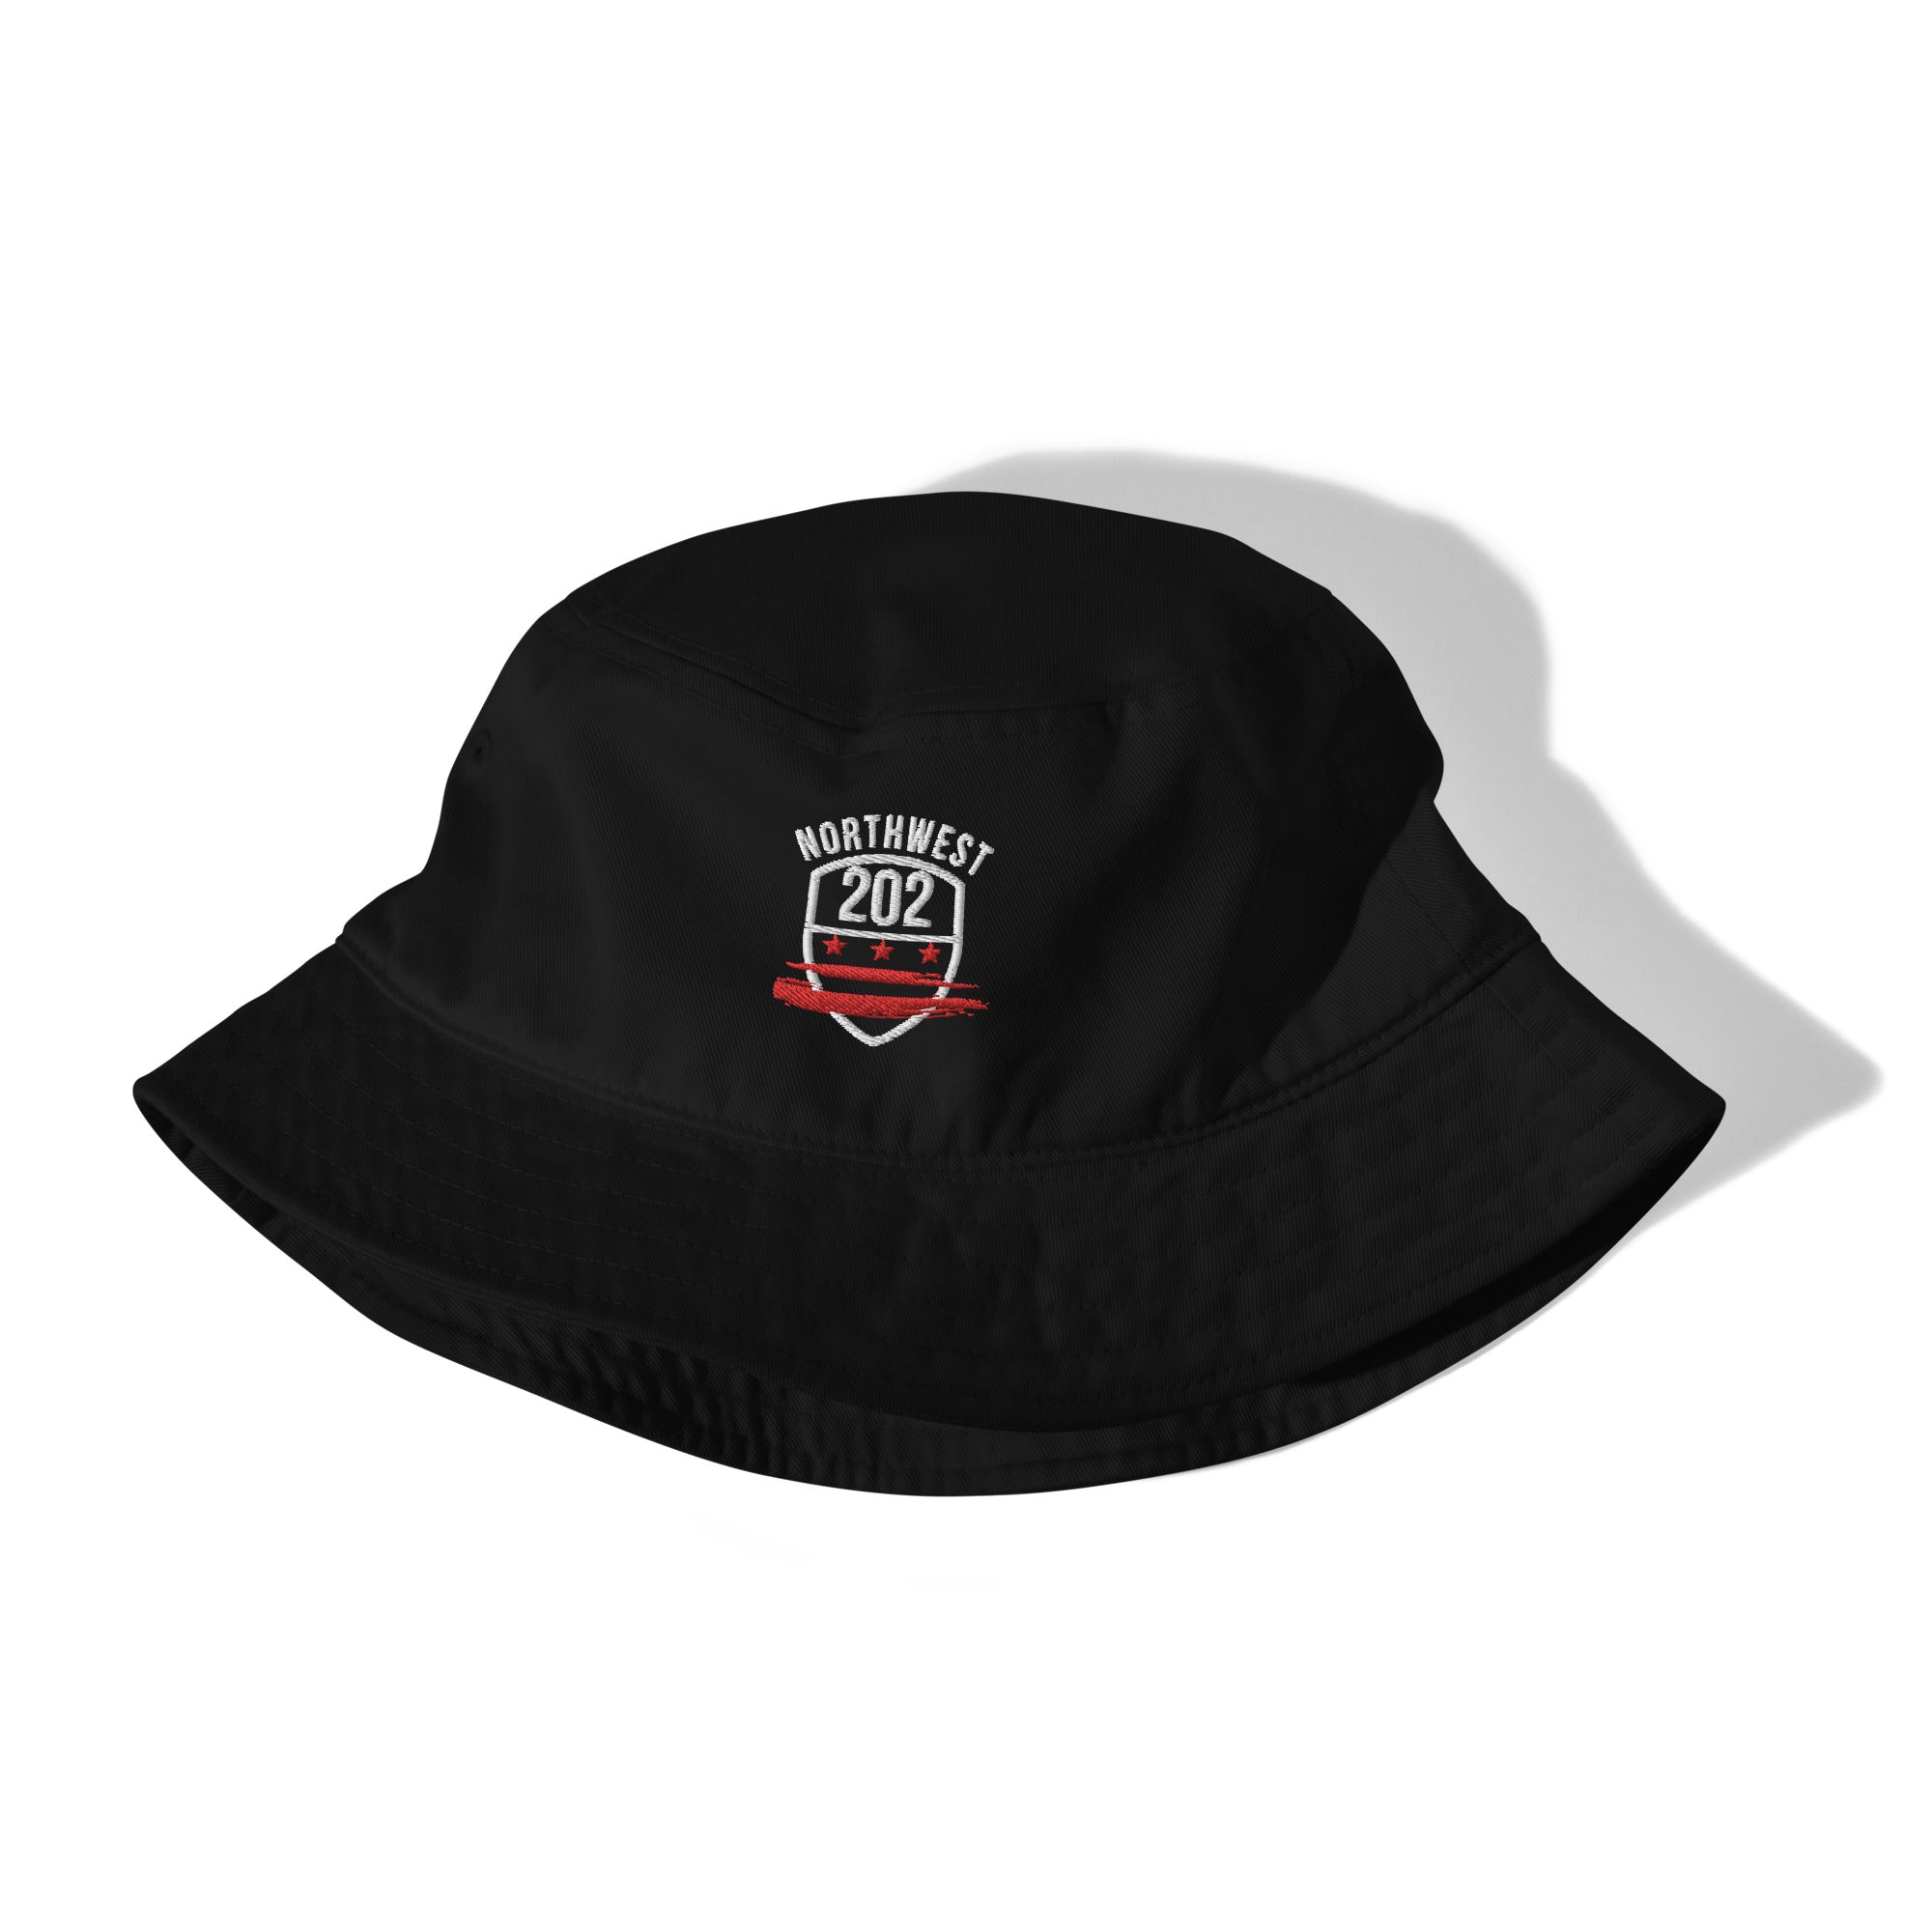 'NORTHWEST/202' -Black Bucket Hat